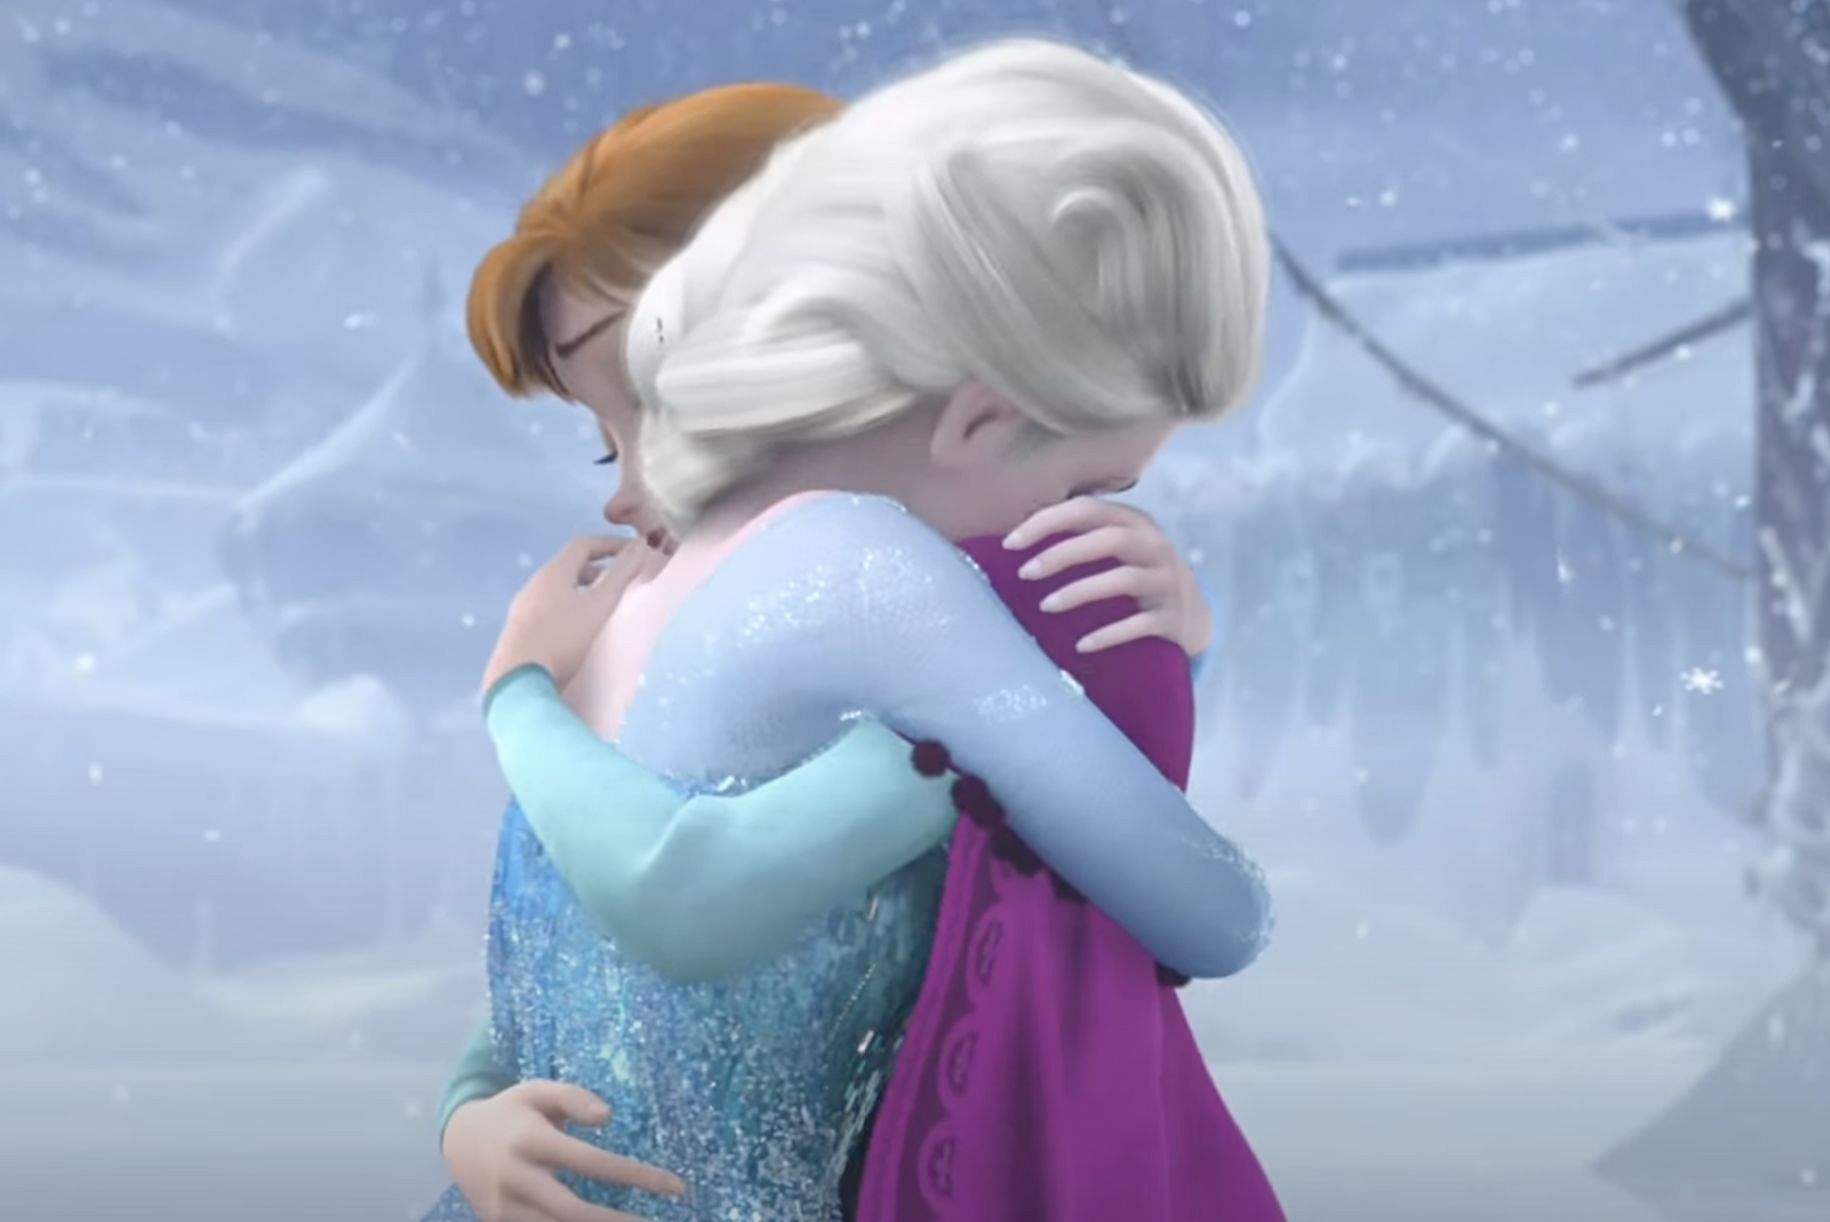 A still of Elsa and Anna hugging. (Image via Disney)